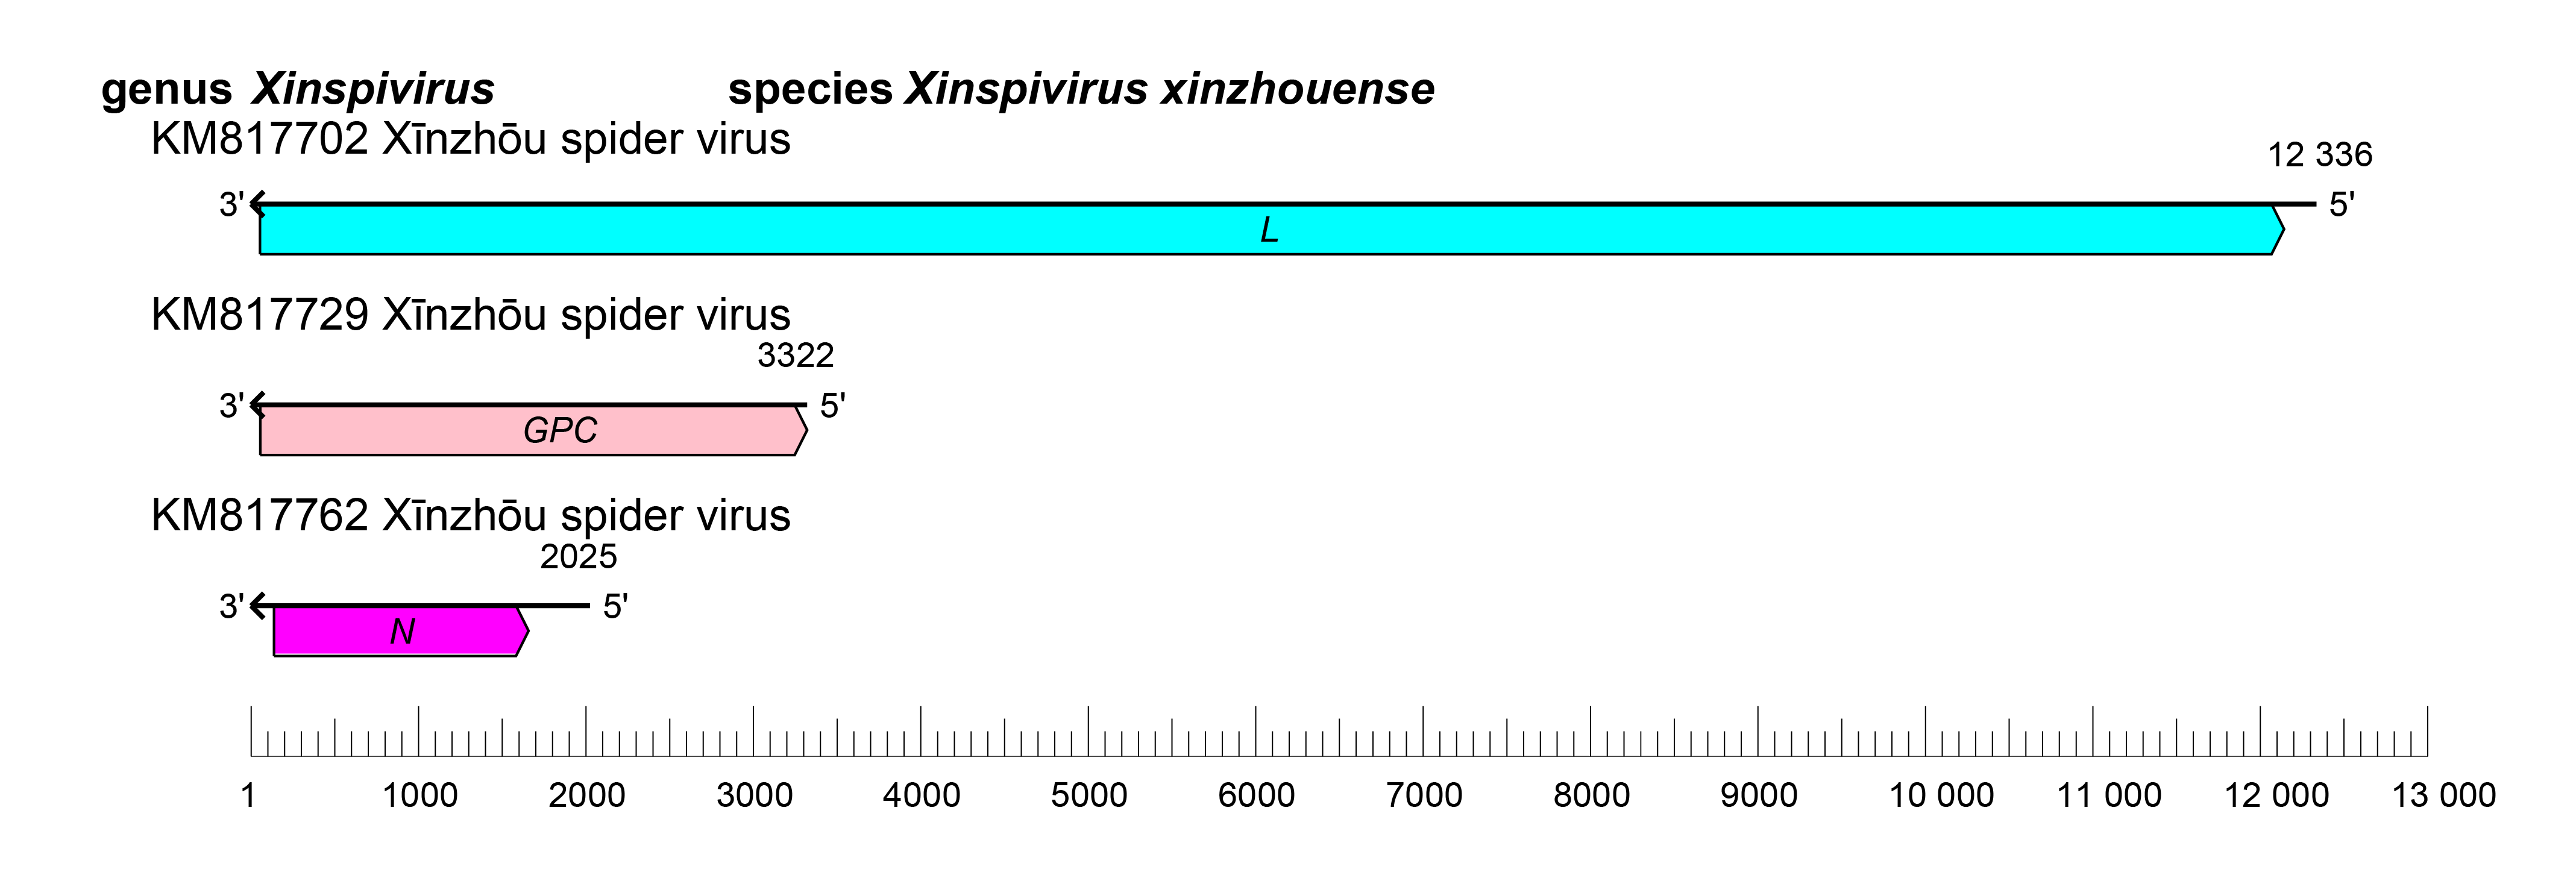 Xinspivirus genome